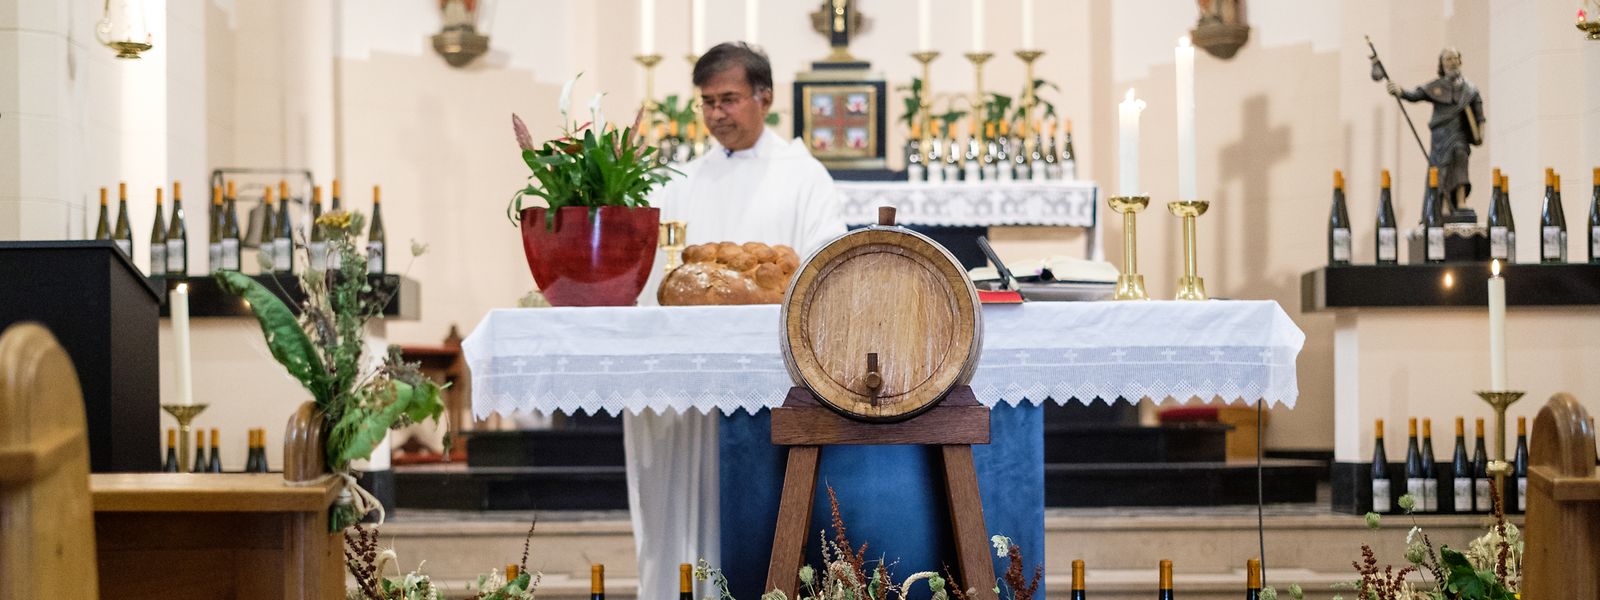 À Greiveldange, les habitants célèbrent leur Léiffrawëschdag le jour de l'Assomption depuis 1985. La bénédiction des bouquets d'herbes, du pain et du vin est au cœur de la tradition.